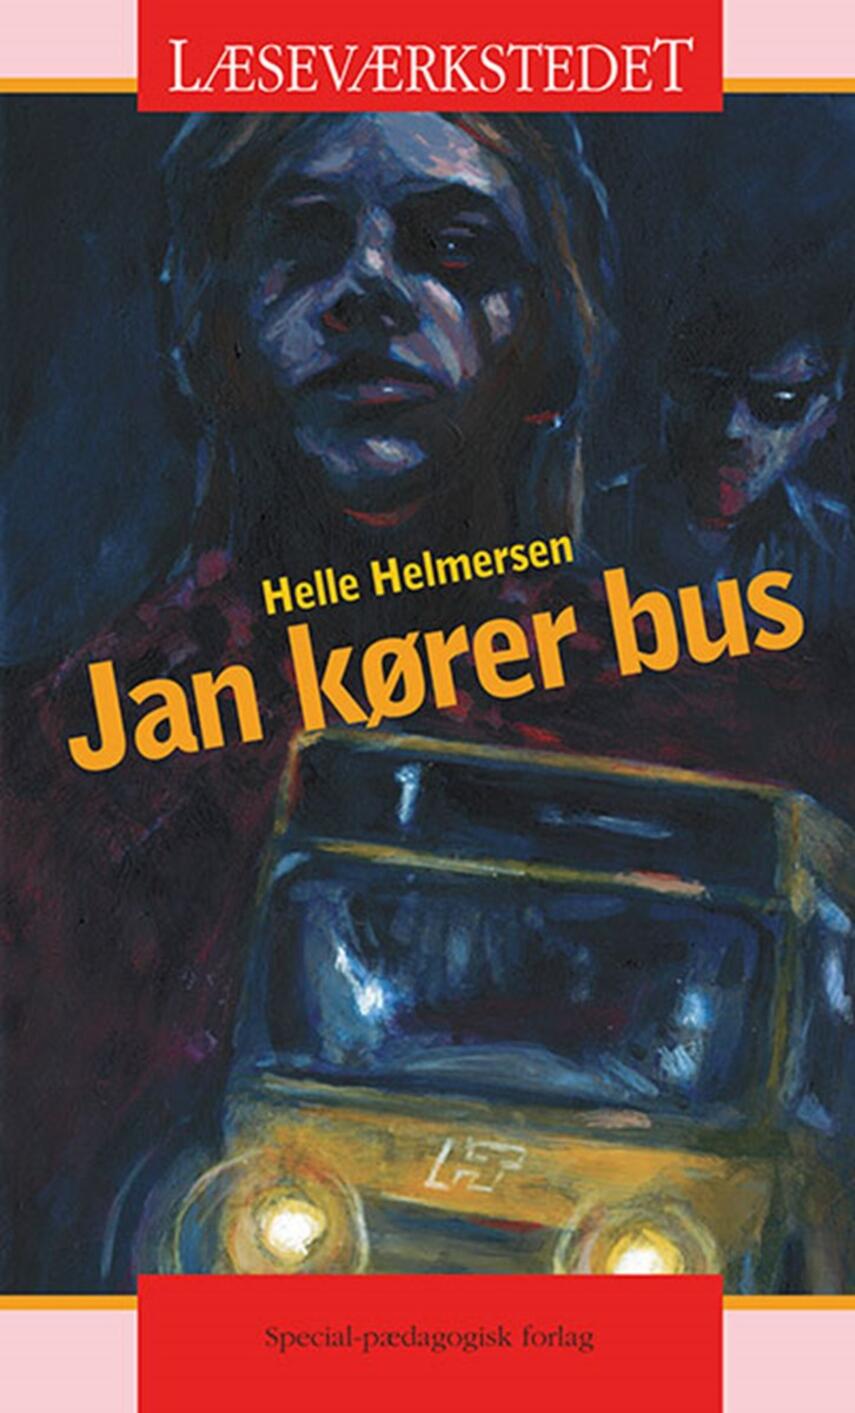 Helle Helmersen: Jan kører bus